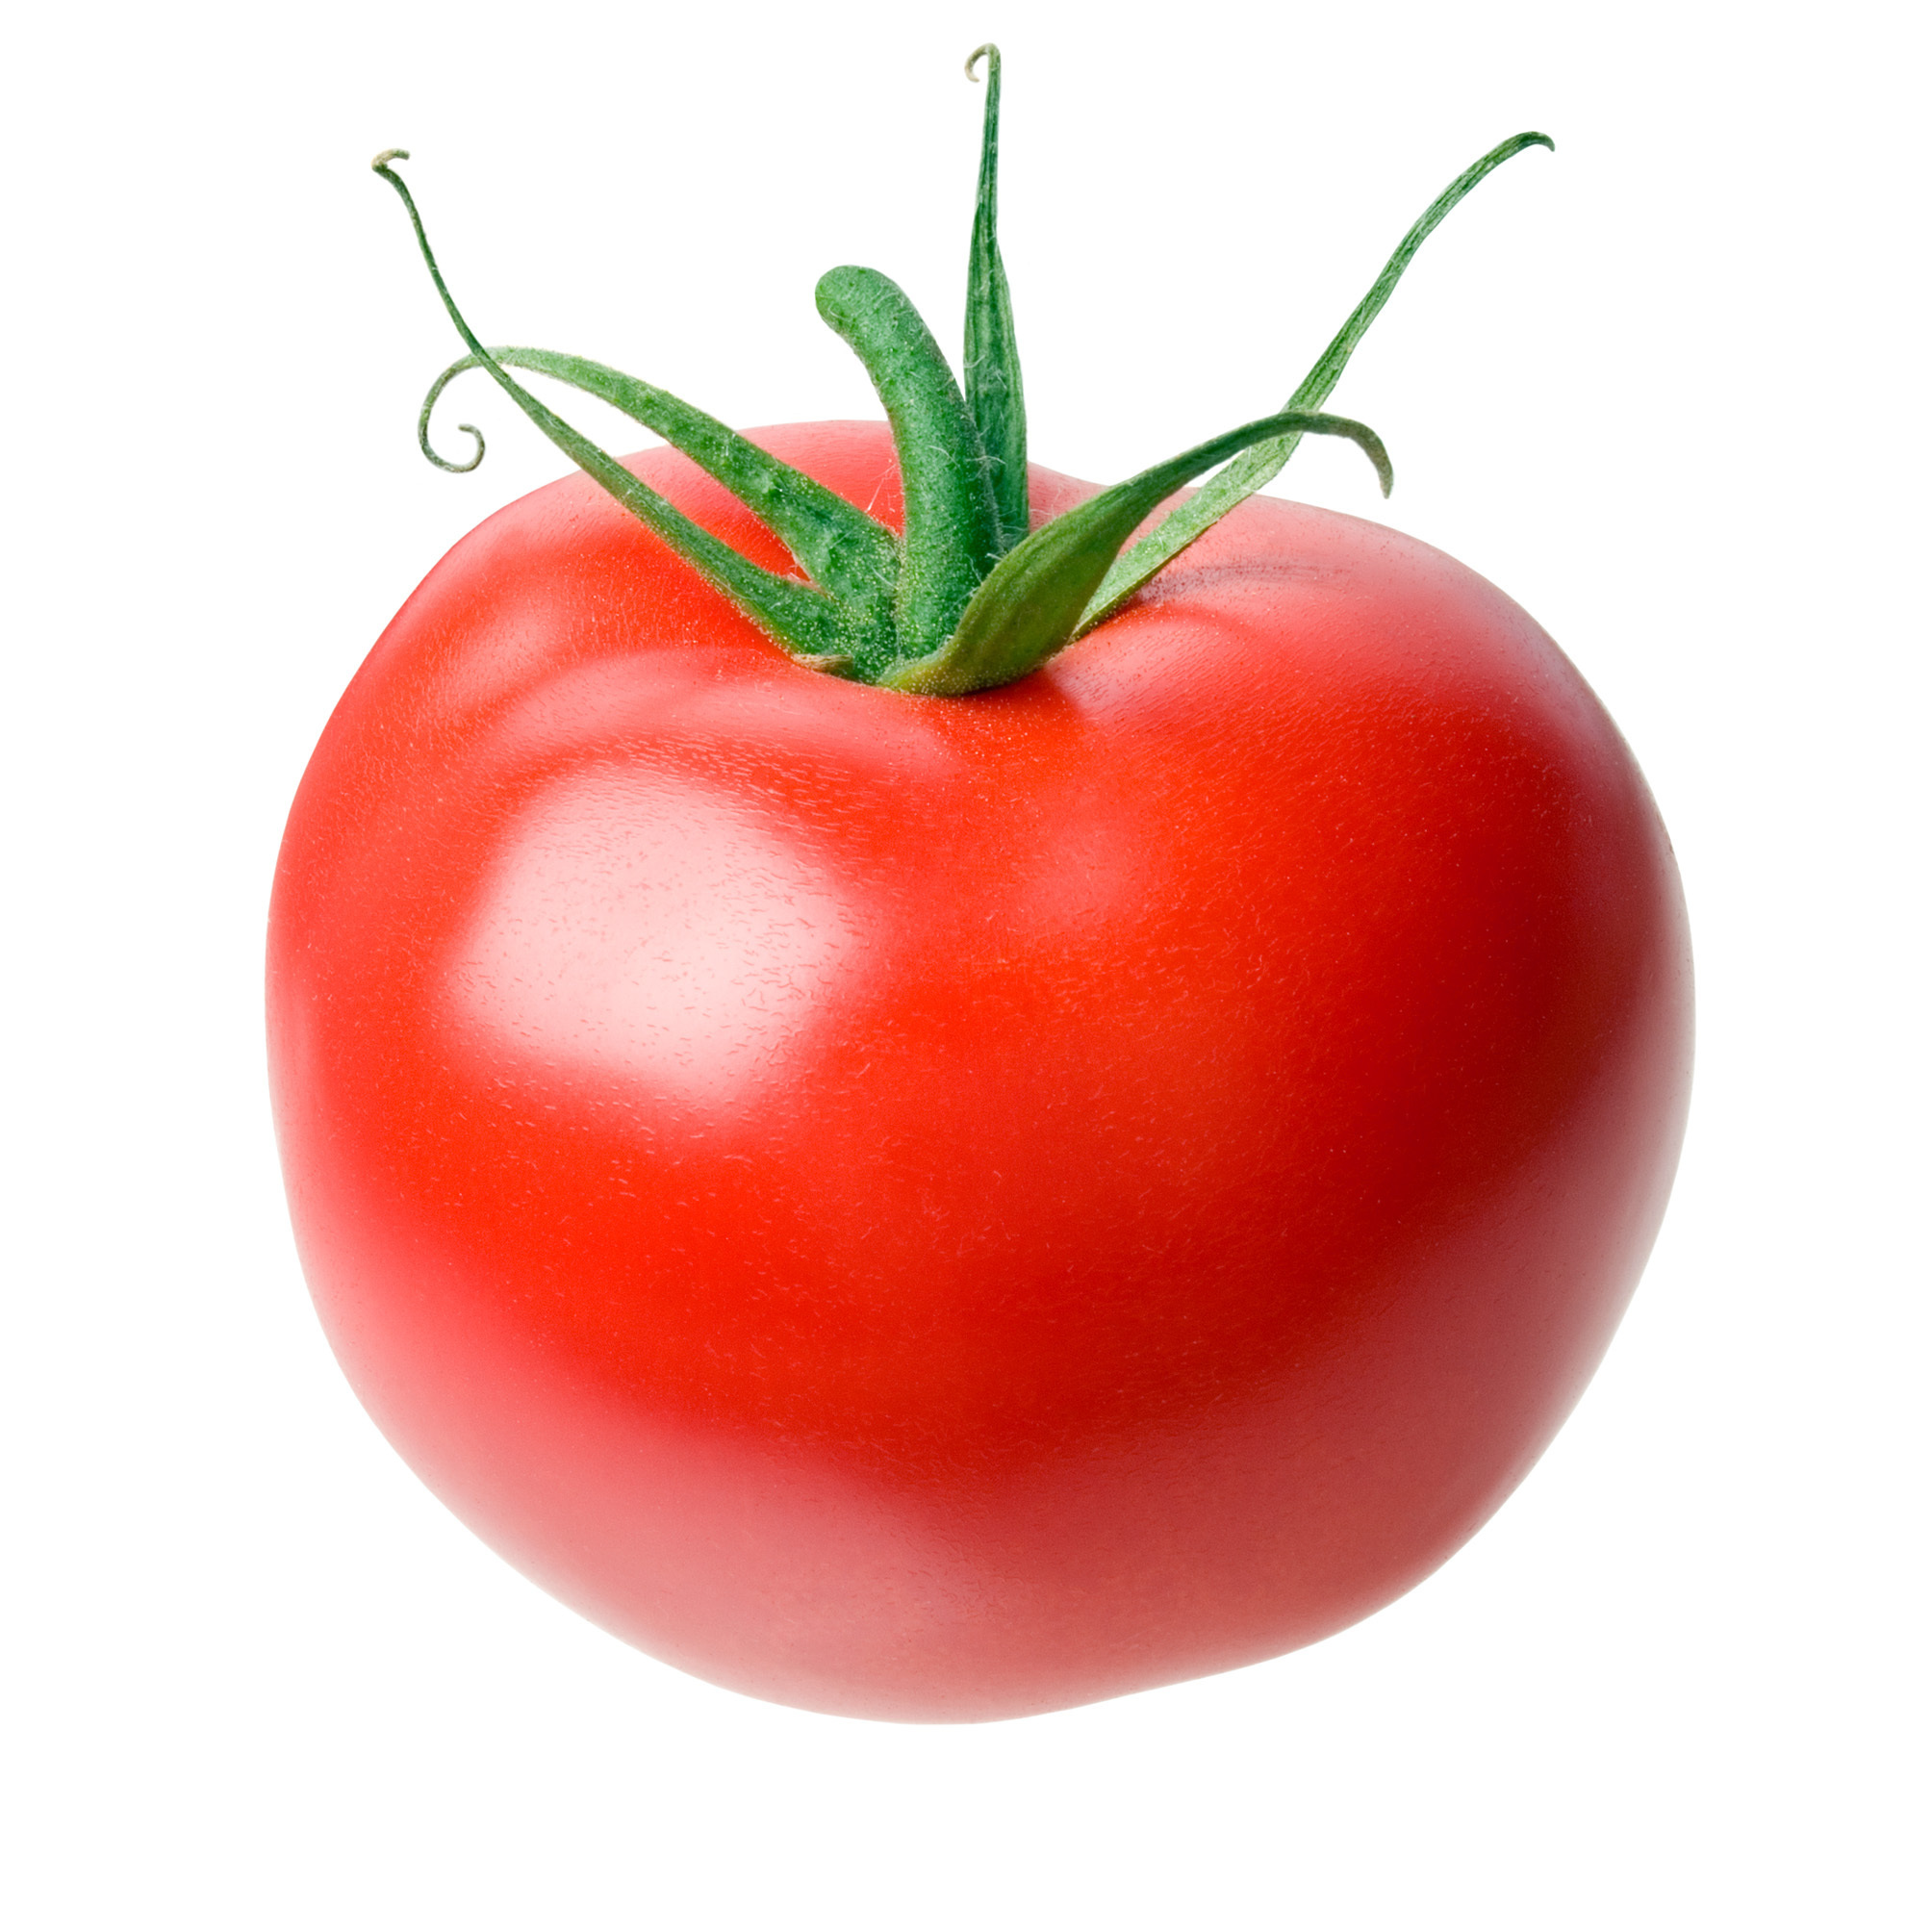 Tomato #17